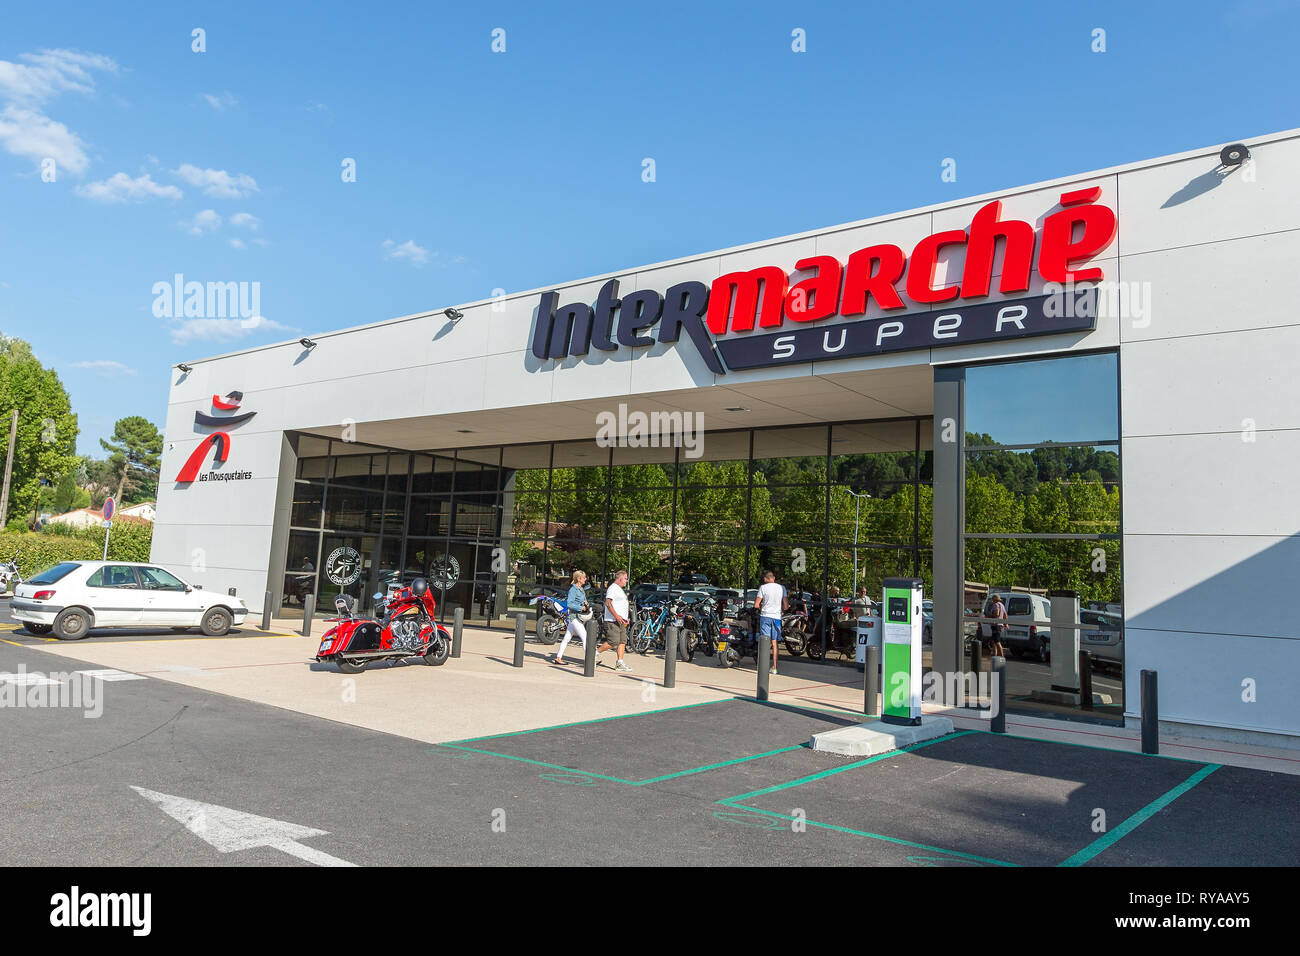 Supermarkt der Kette Intermarche in Salernes, 29.08.2018 Bildnachweis: Mario Hommes / HH-Photography Stock Photo